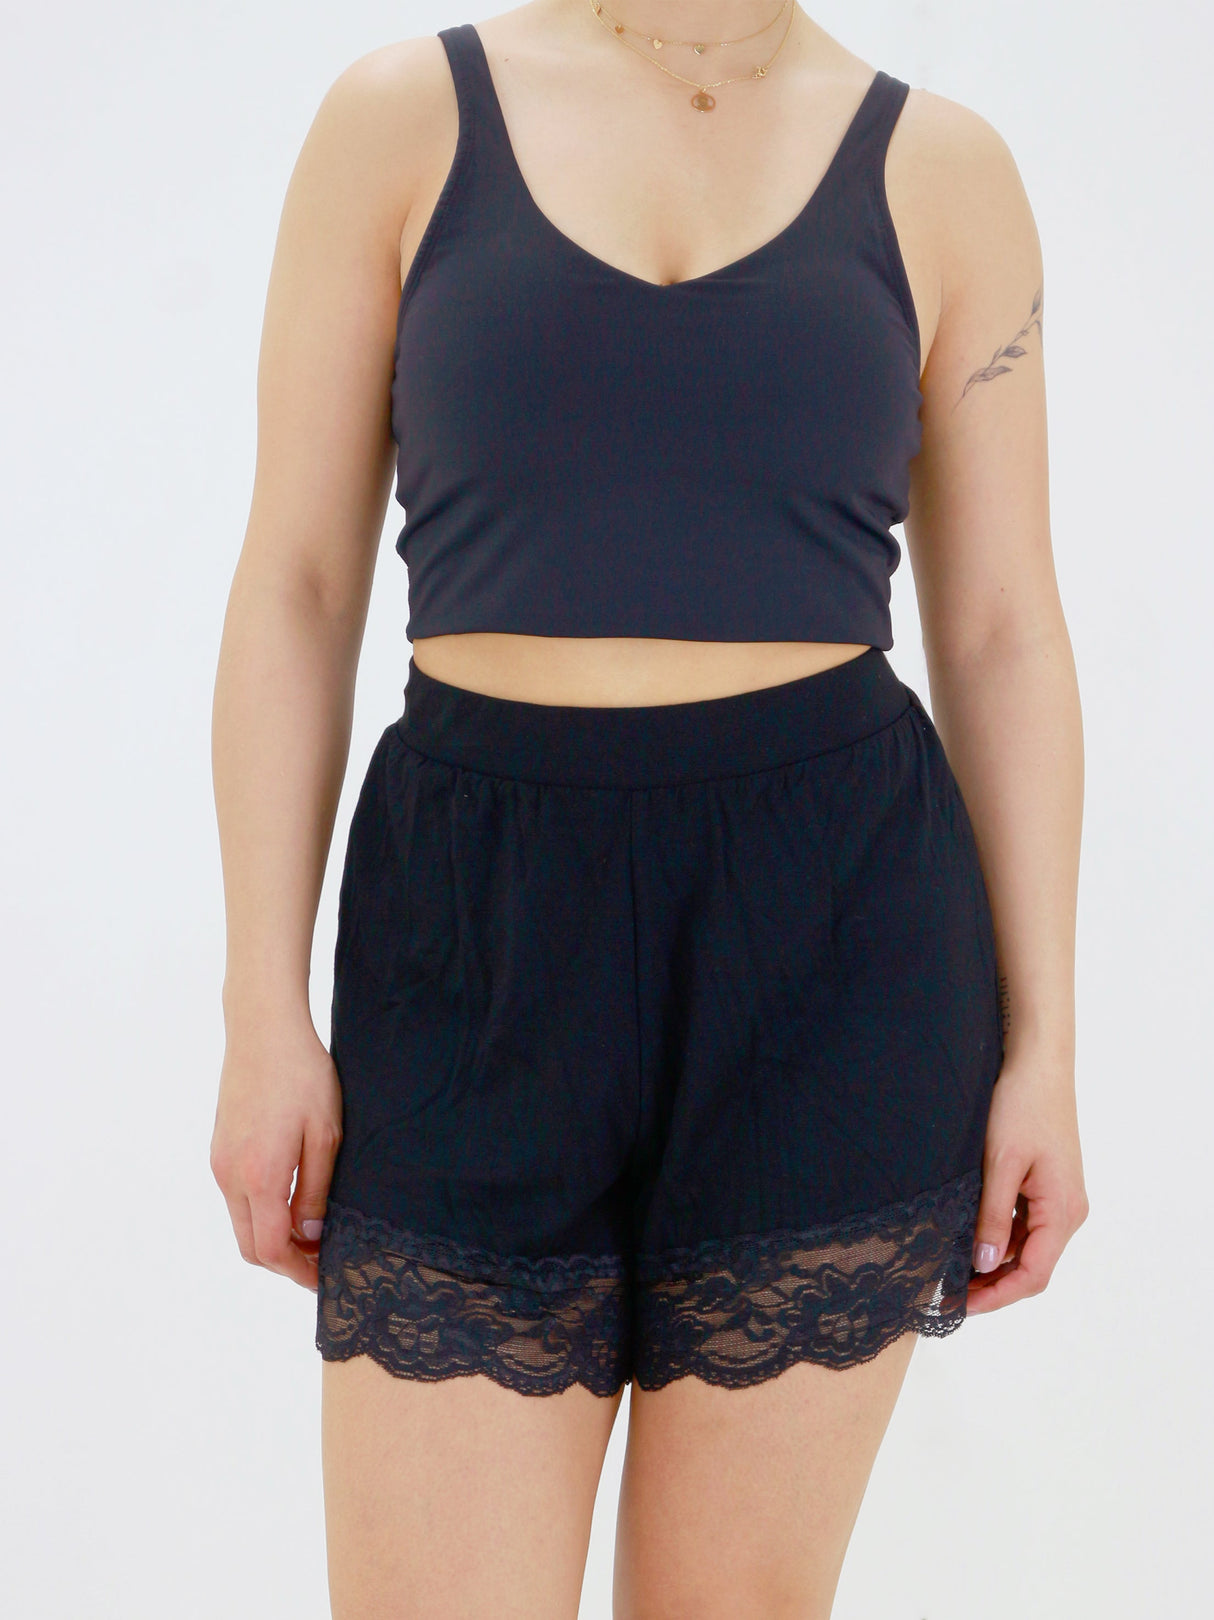 Image for Women's Lace Sleepwear Short,Black